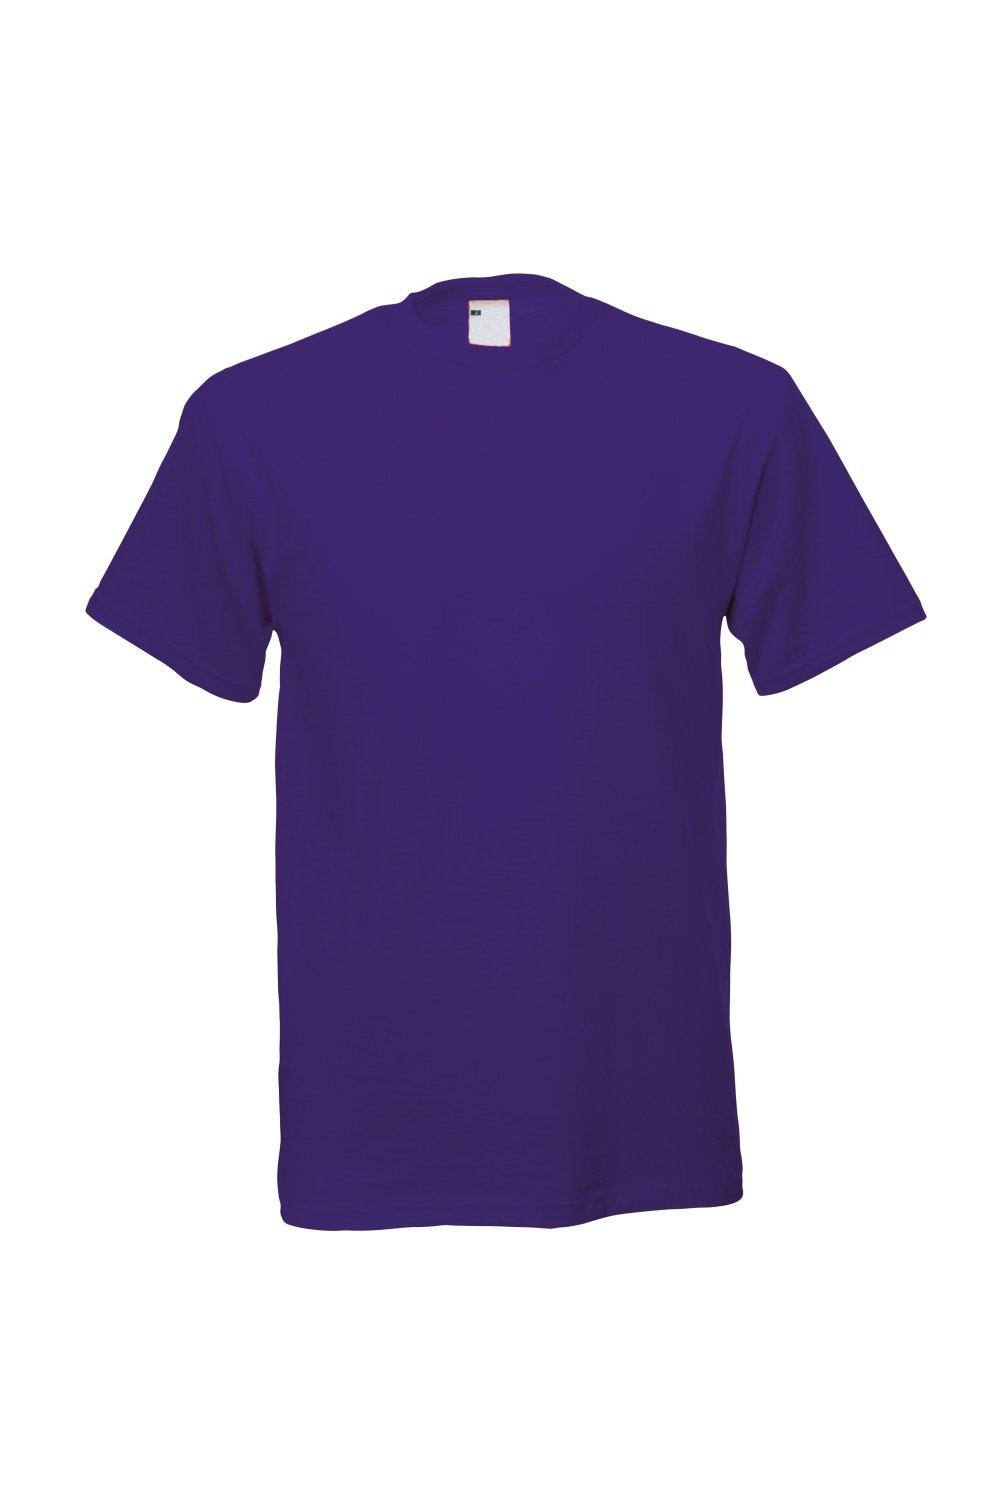 Повседневная футболка с коротким рукавом Universal Textiles, фиолетовый мужская футболка лиса русская краса xl серый меланж